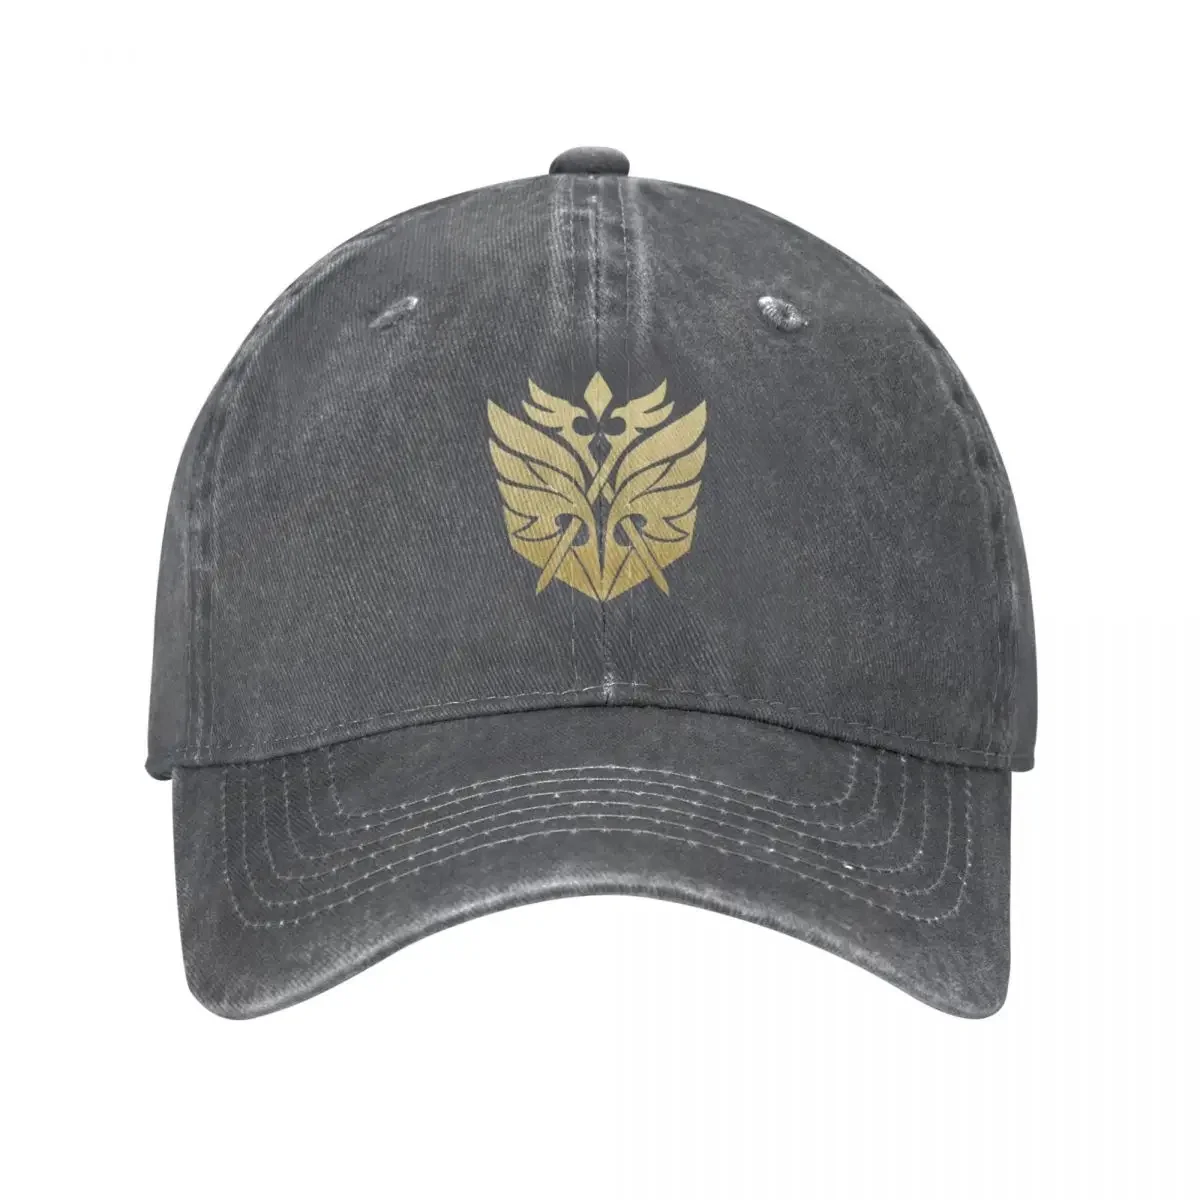 

Рыцари фавониус Золотой логотип-Genshin ударопрочная бейсболка джинсовые шапки кепка хип-хоп бейсбольная Ковбойская шапка для мужчин и женщин